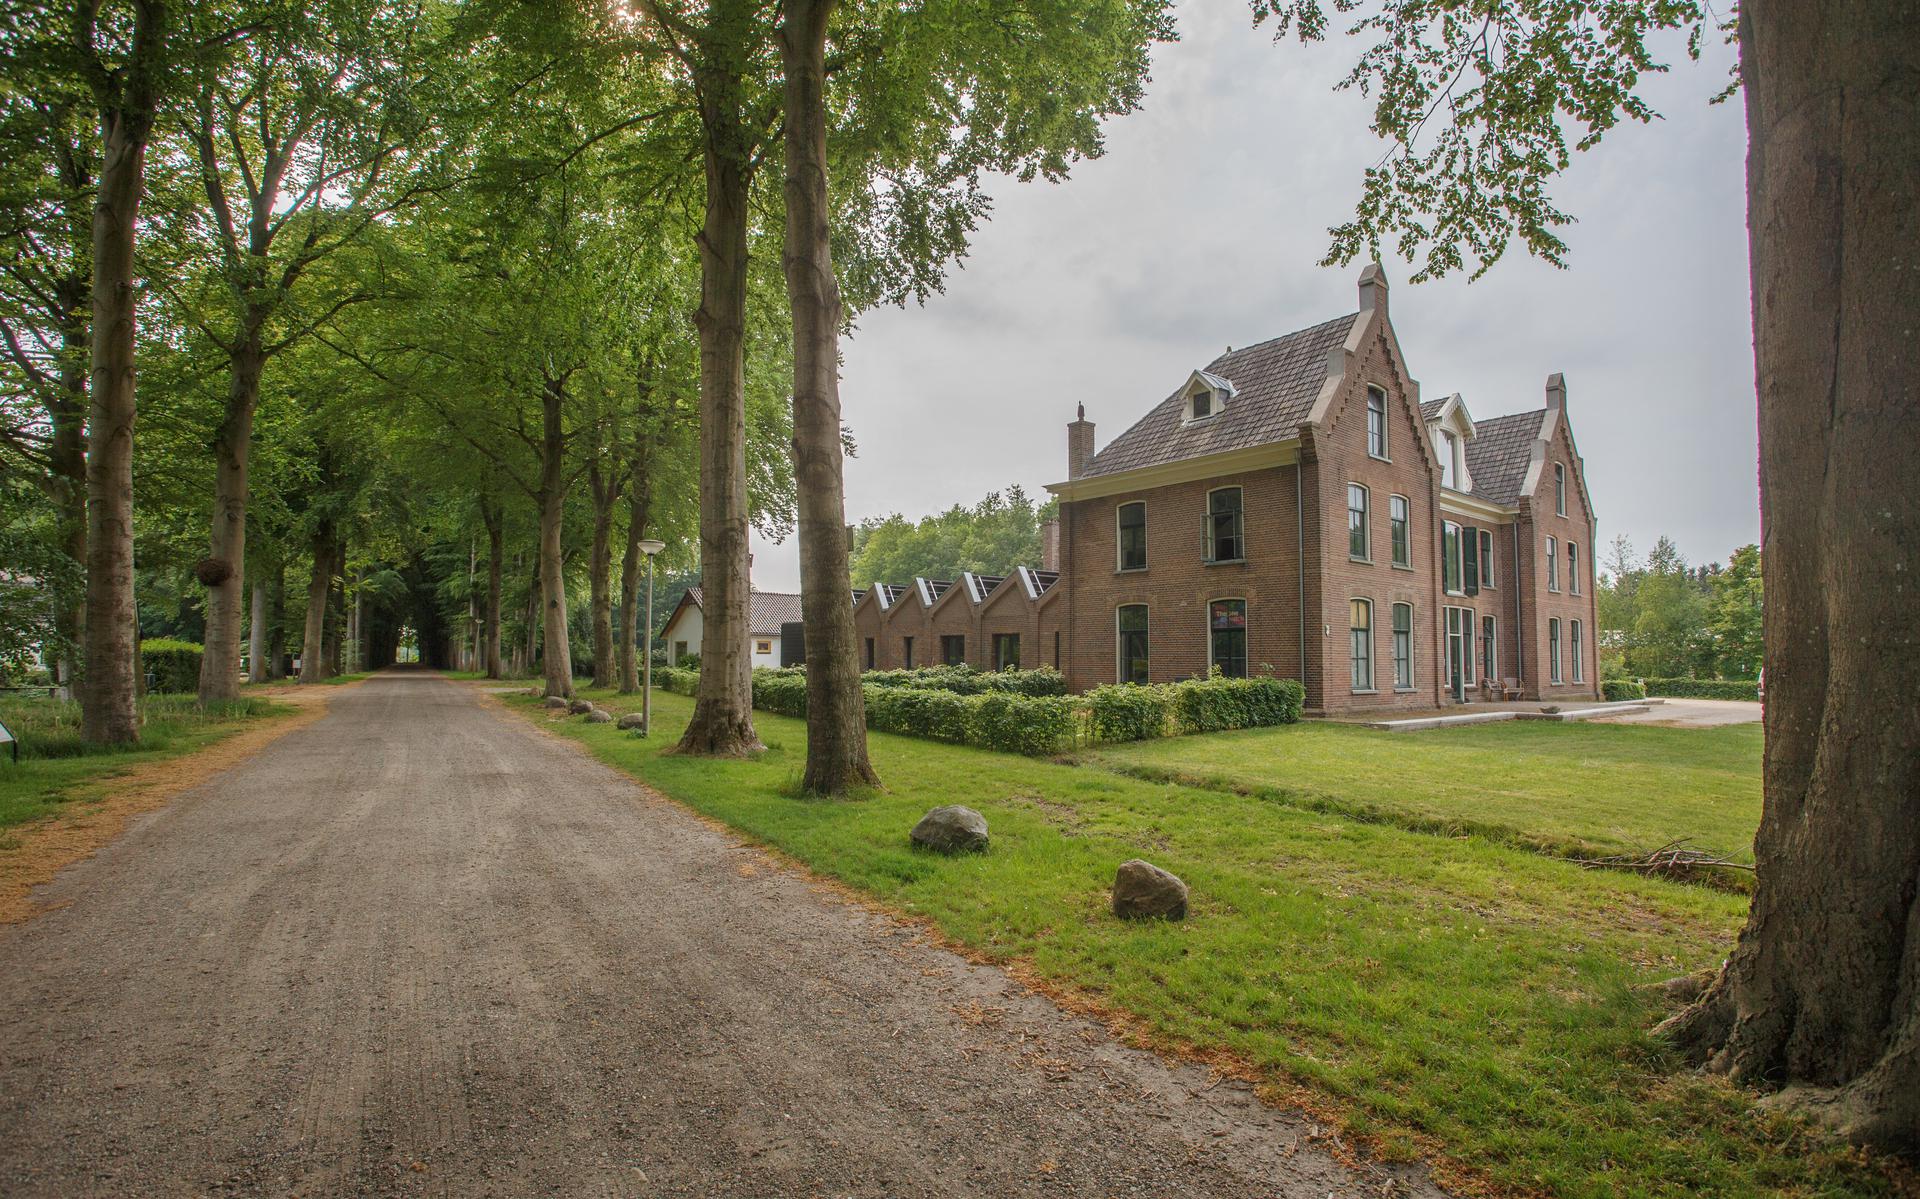 Het erfgoed inclusief het fraaie landschap van Frederiksoord mag door de gaswinning niet verloren gaan, aldus de provincie Drenthe.